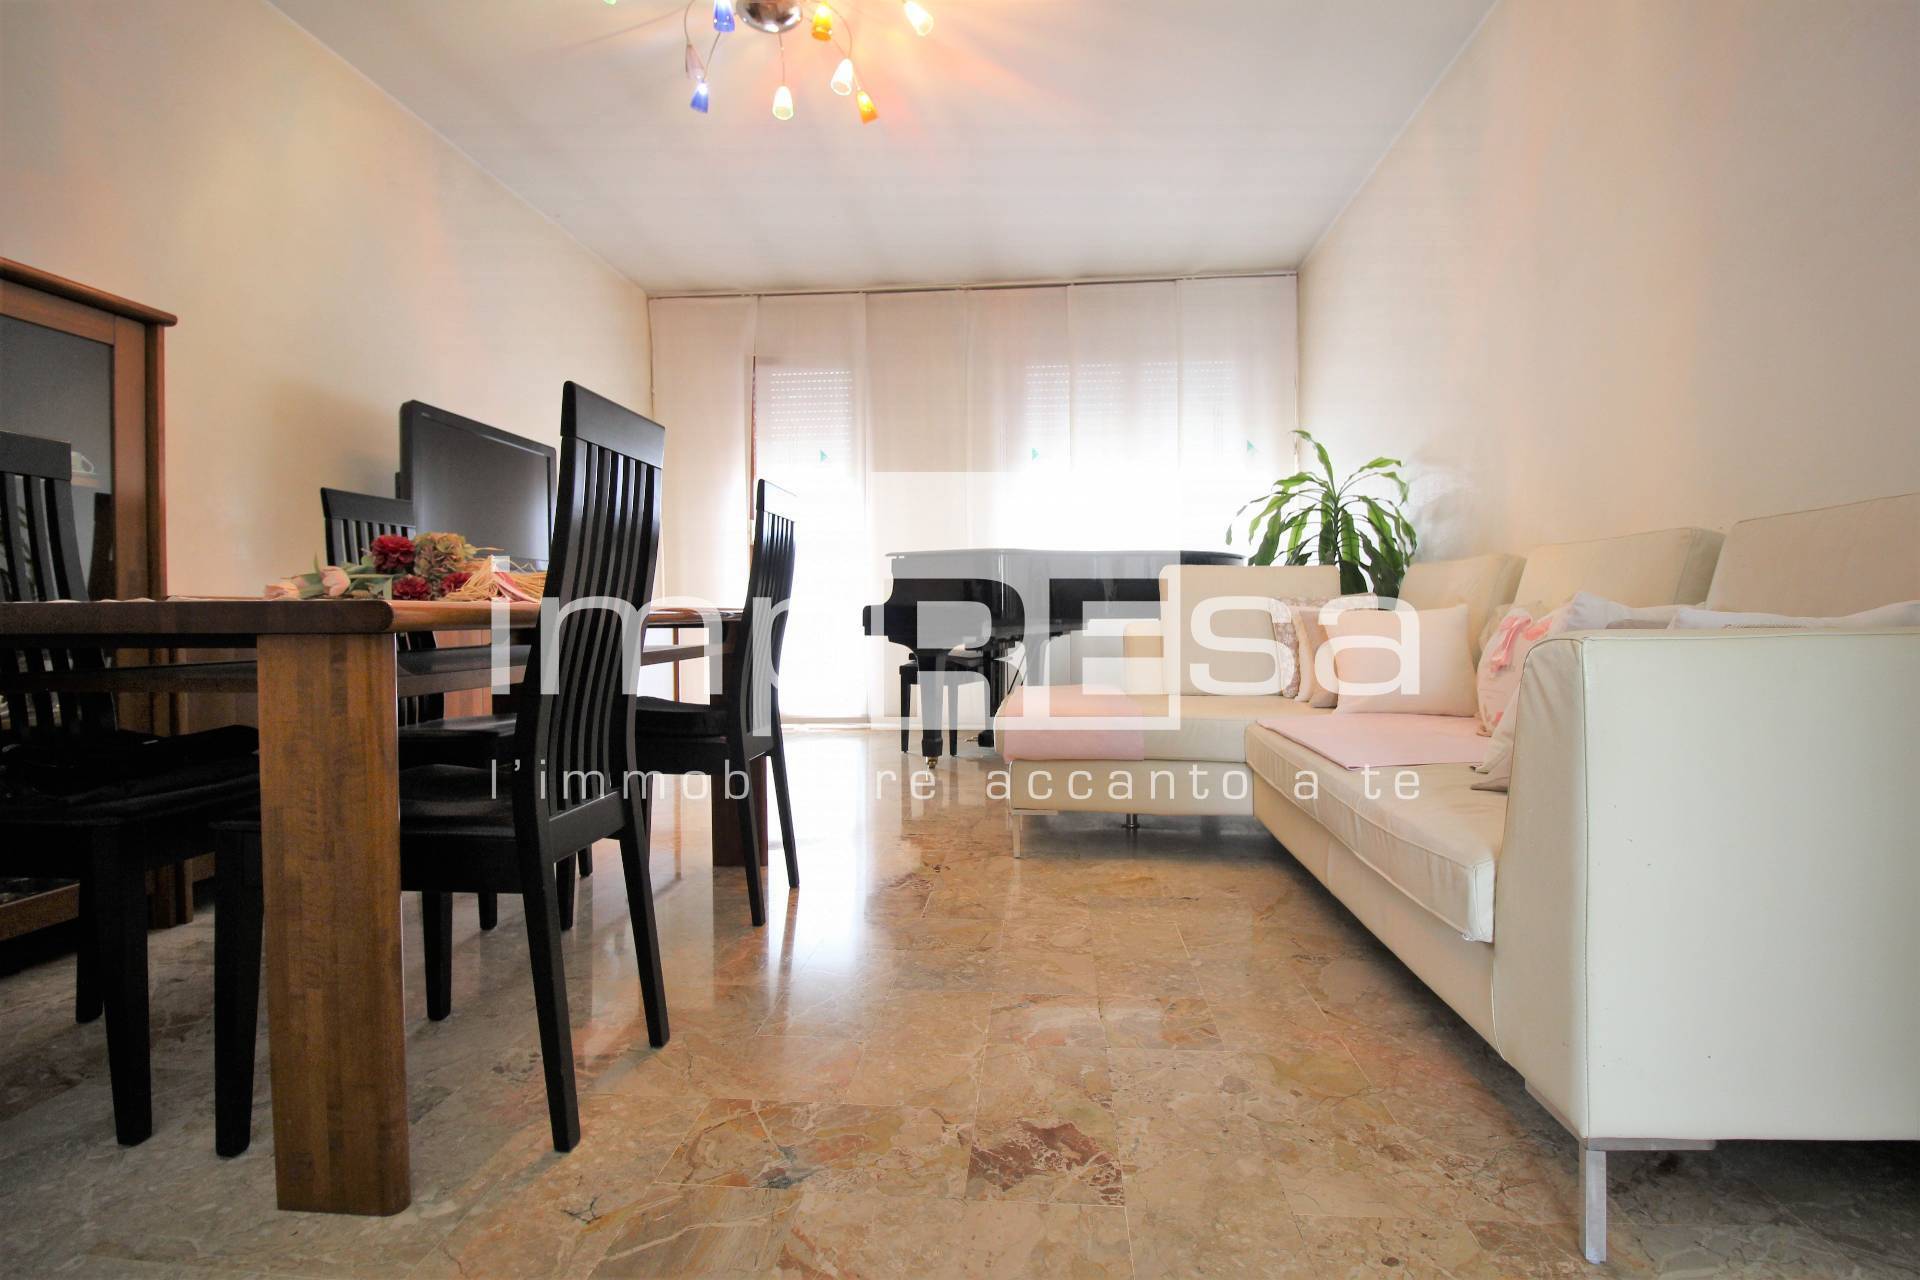 Appartamento in vendita a Martellago, 5 locali, prezzo € 135.000 | PortaleAgenzieImmobiliari.it